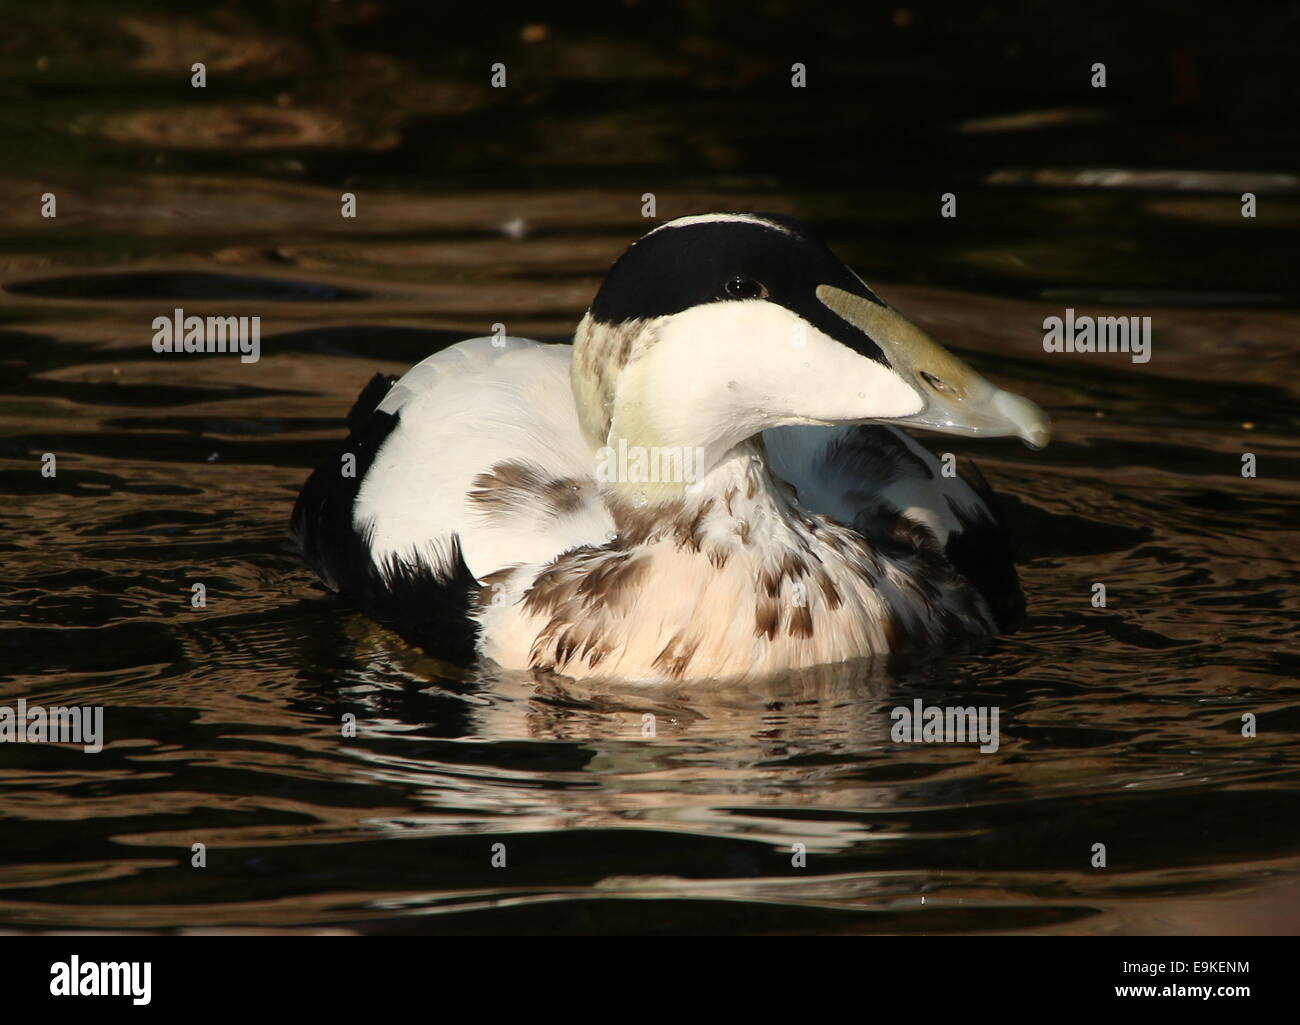 Male Common Eider duck (Somateria mollissima) swimming in a lake Stock Photo